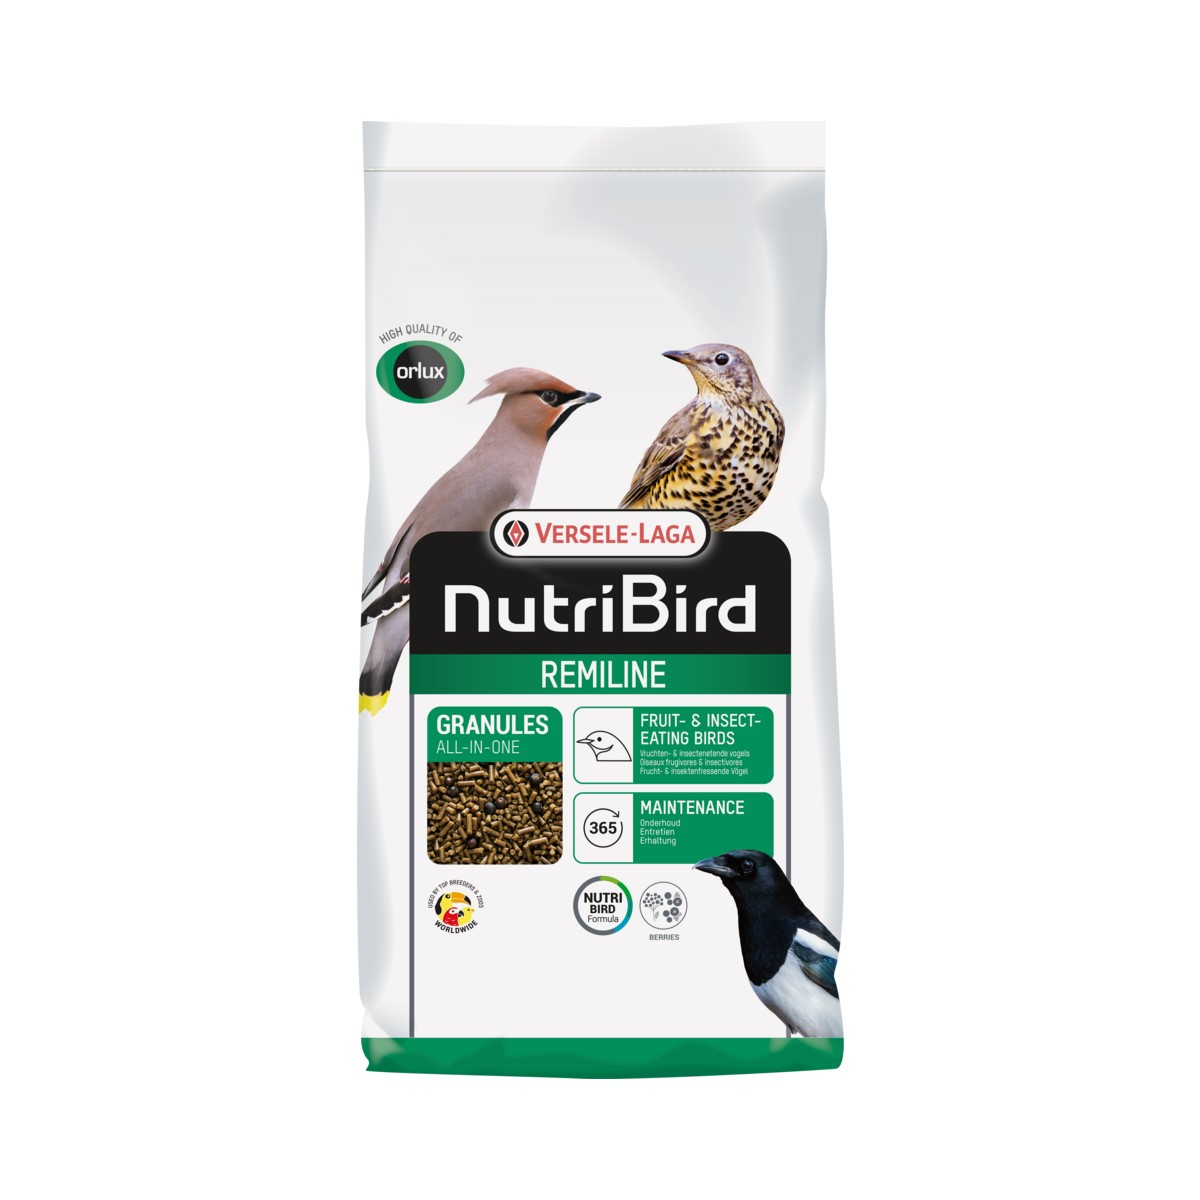 NutriBird Remiline Pateekorrel pellet universale per uccelli mangiatori di frutta e insettivori